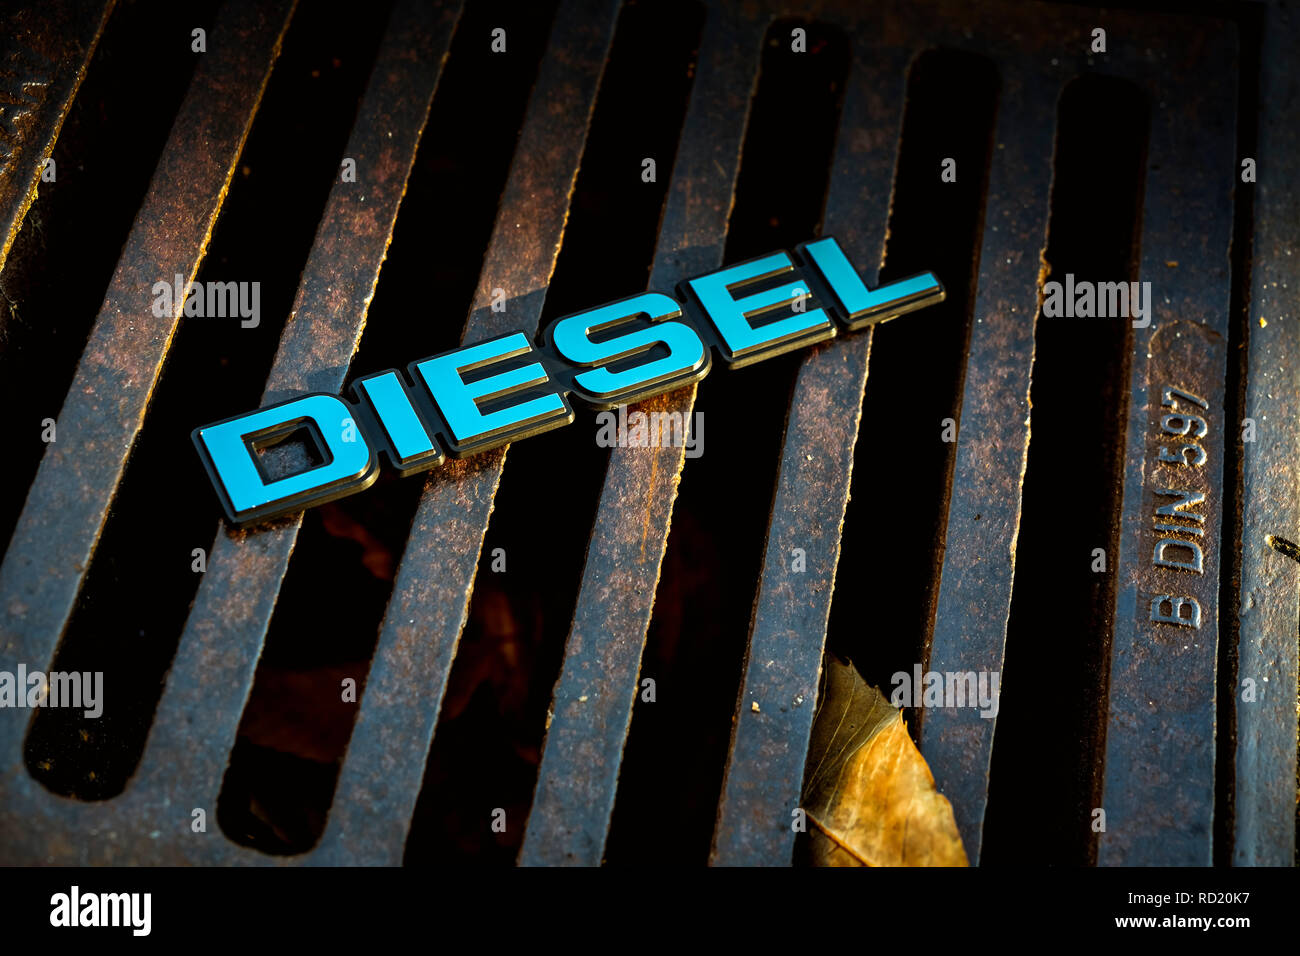 Diesel signs on a Gullideckel, end of the diesel car, Diesel-Zeichen auf einem Gullideckel, Ende des Diesel-Autos Stock Photo